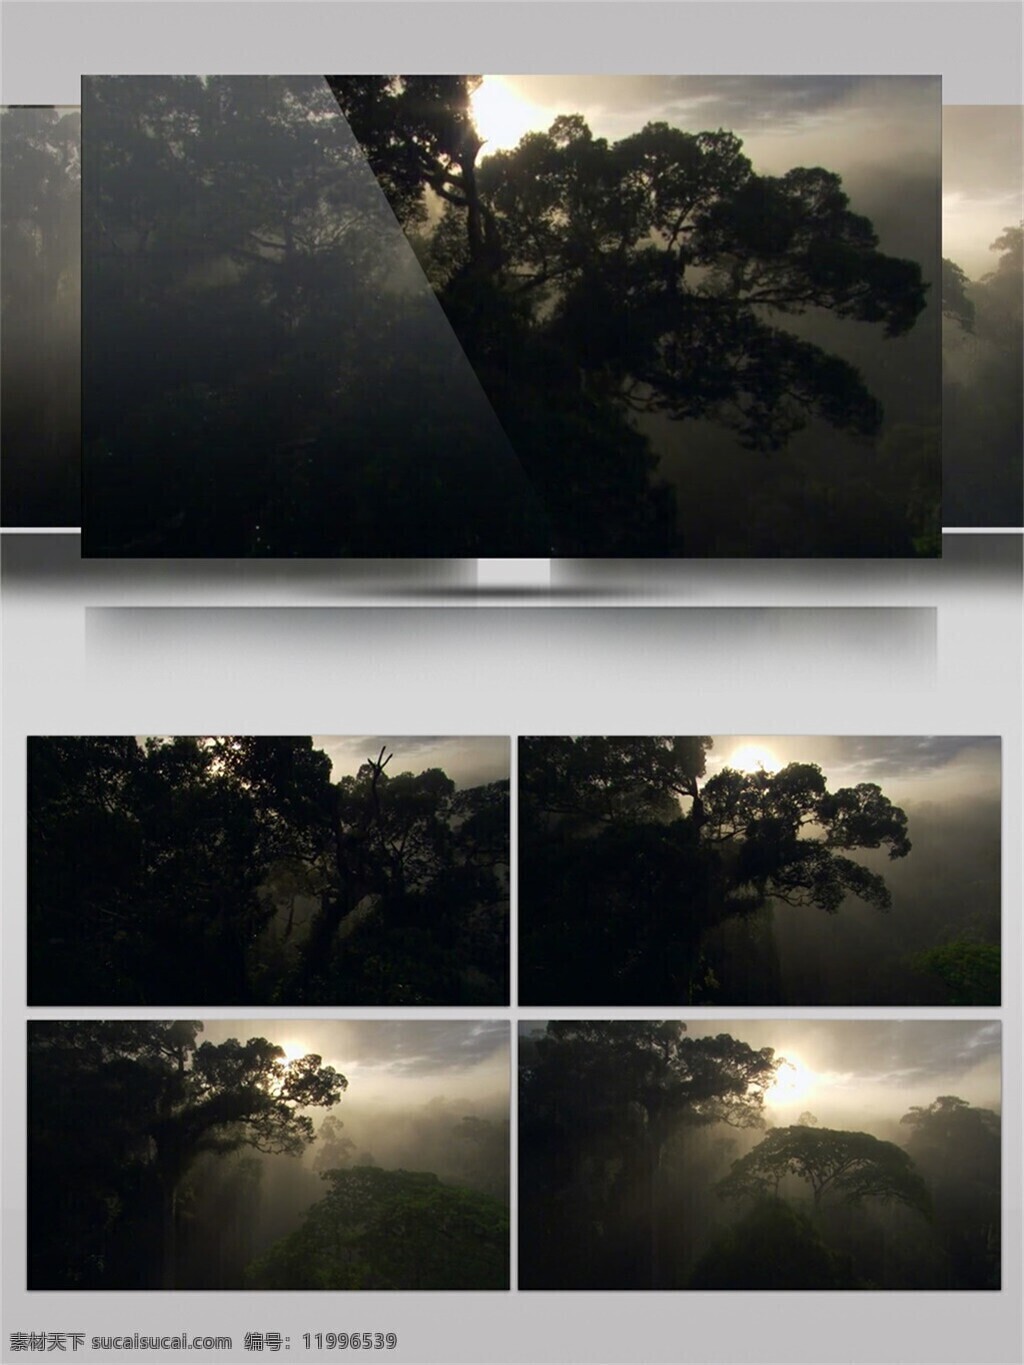 森林 环绕 村庄 日出 风景 视频 音效 视频素材 植物 阳光 唯美 天然 视频音效 雾气